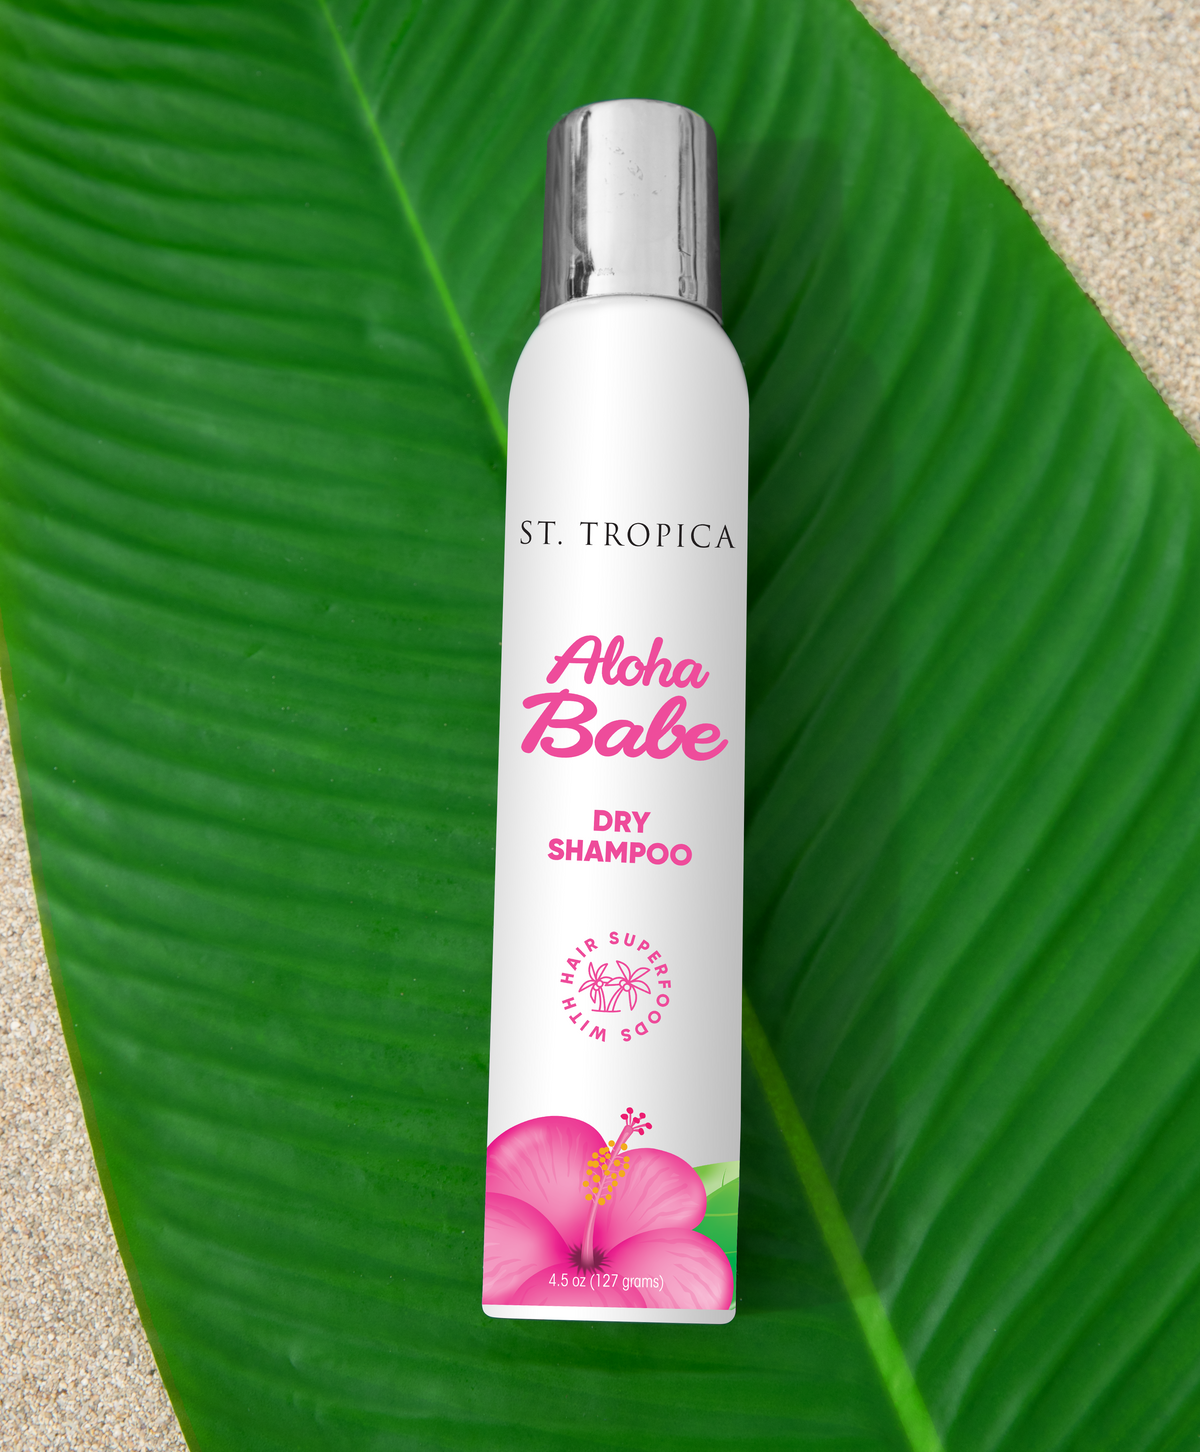 Aloha Babe Dry Shampoo - ST. TROPICA